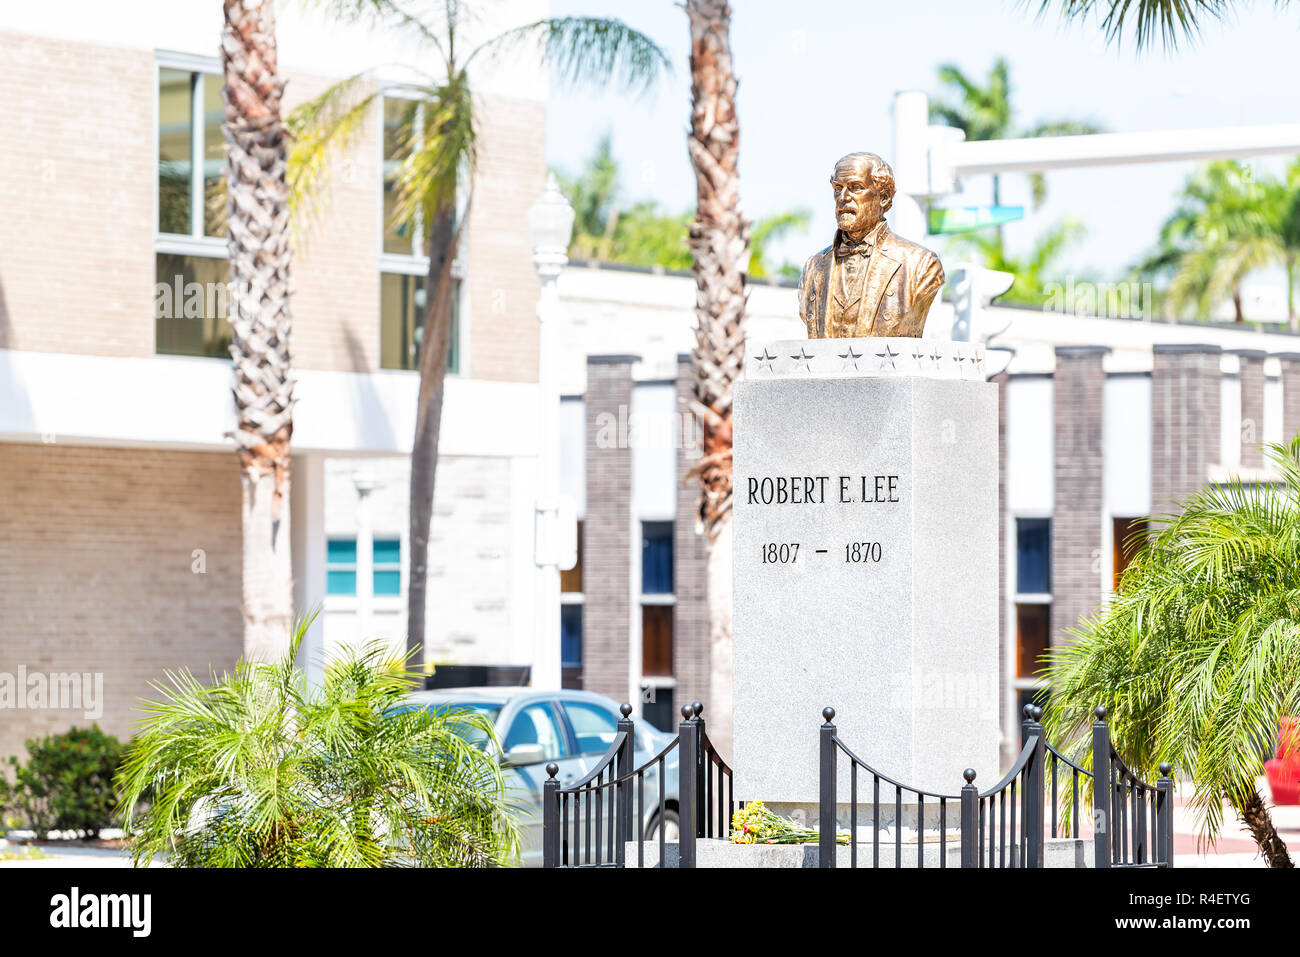 Fort Myers, USA - 29. April 2018: Stadt Stadt Straße während der sonnigen Tag in Florida Golf von Mexiko Küste, Robert E Lee statue Gedenkstätte Büste Skulptur Stockfoto